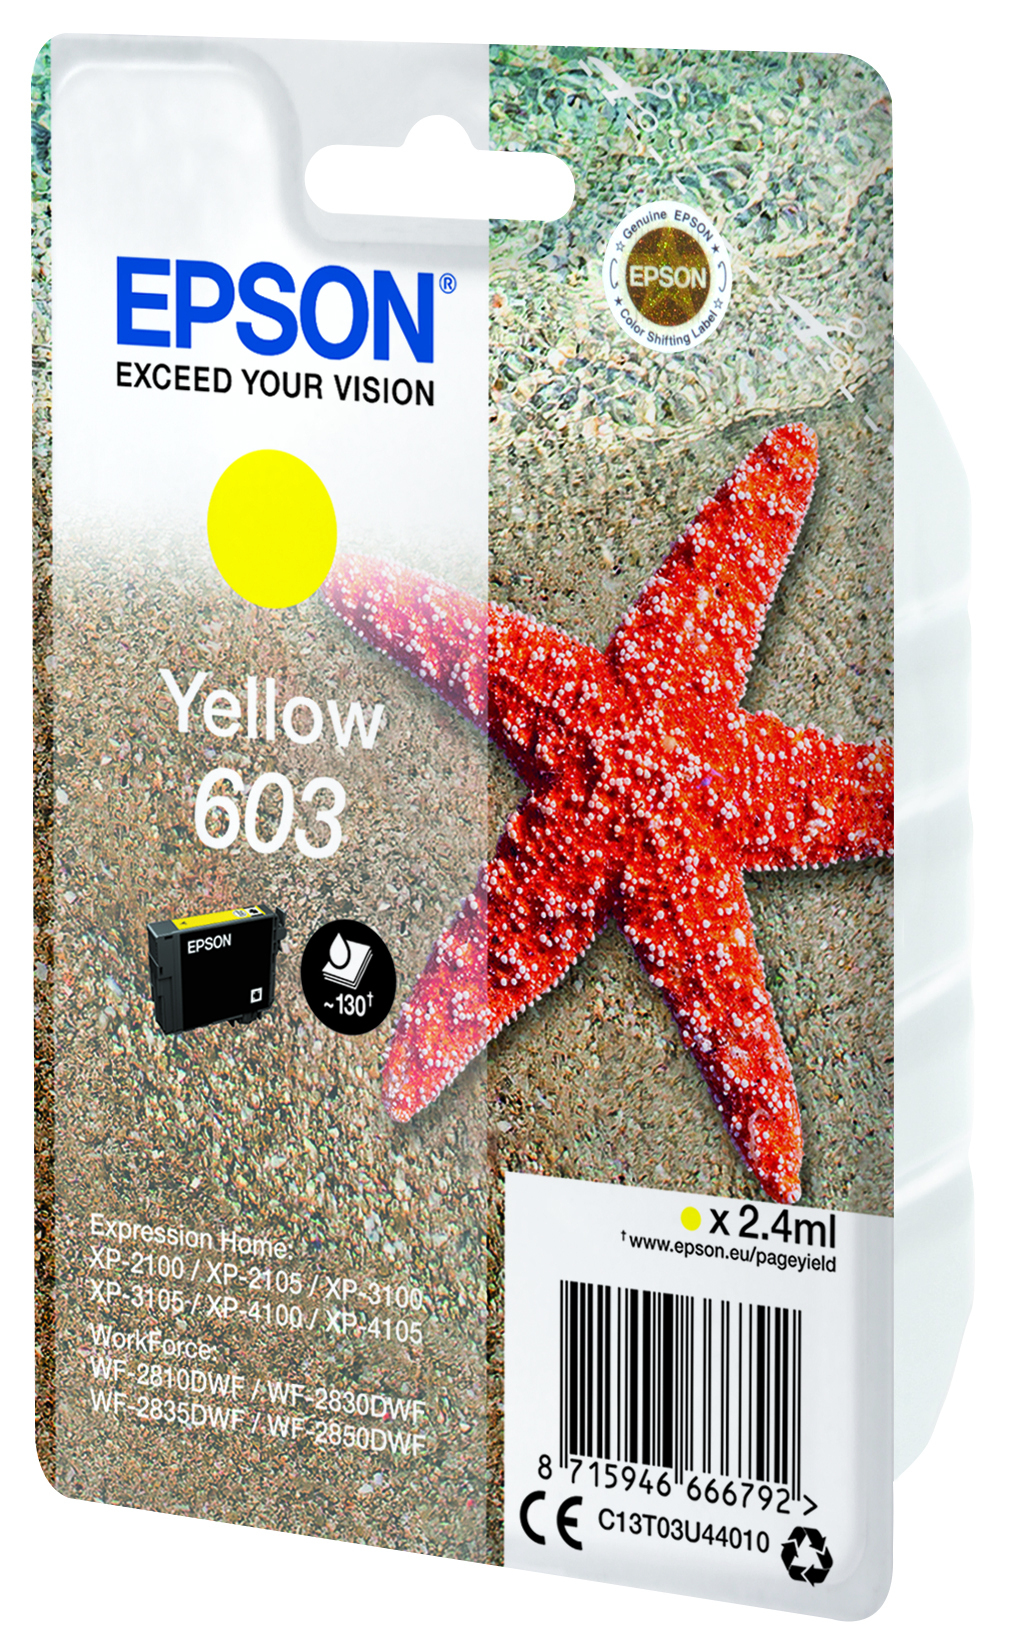 T03U Yellow 603 Ink Cartridge